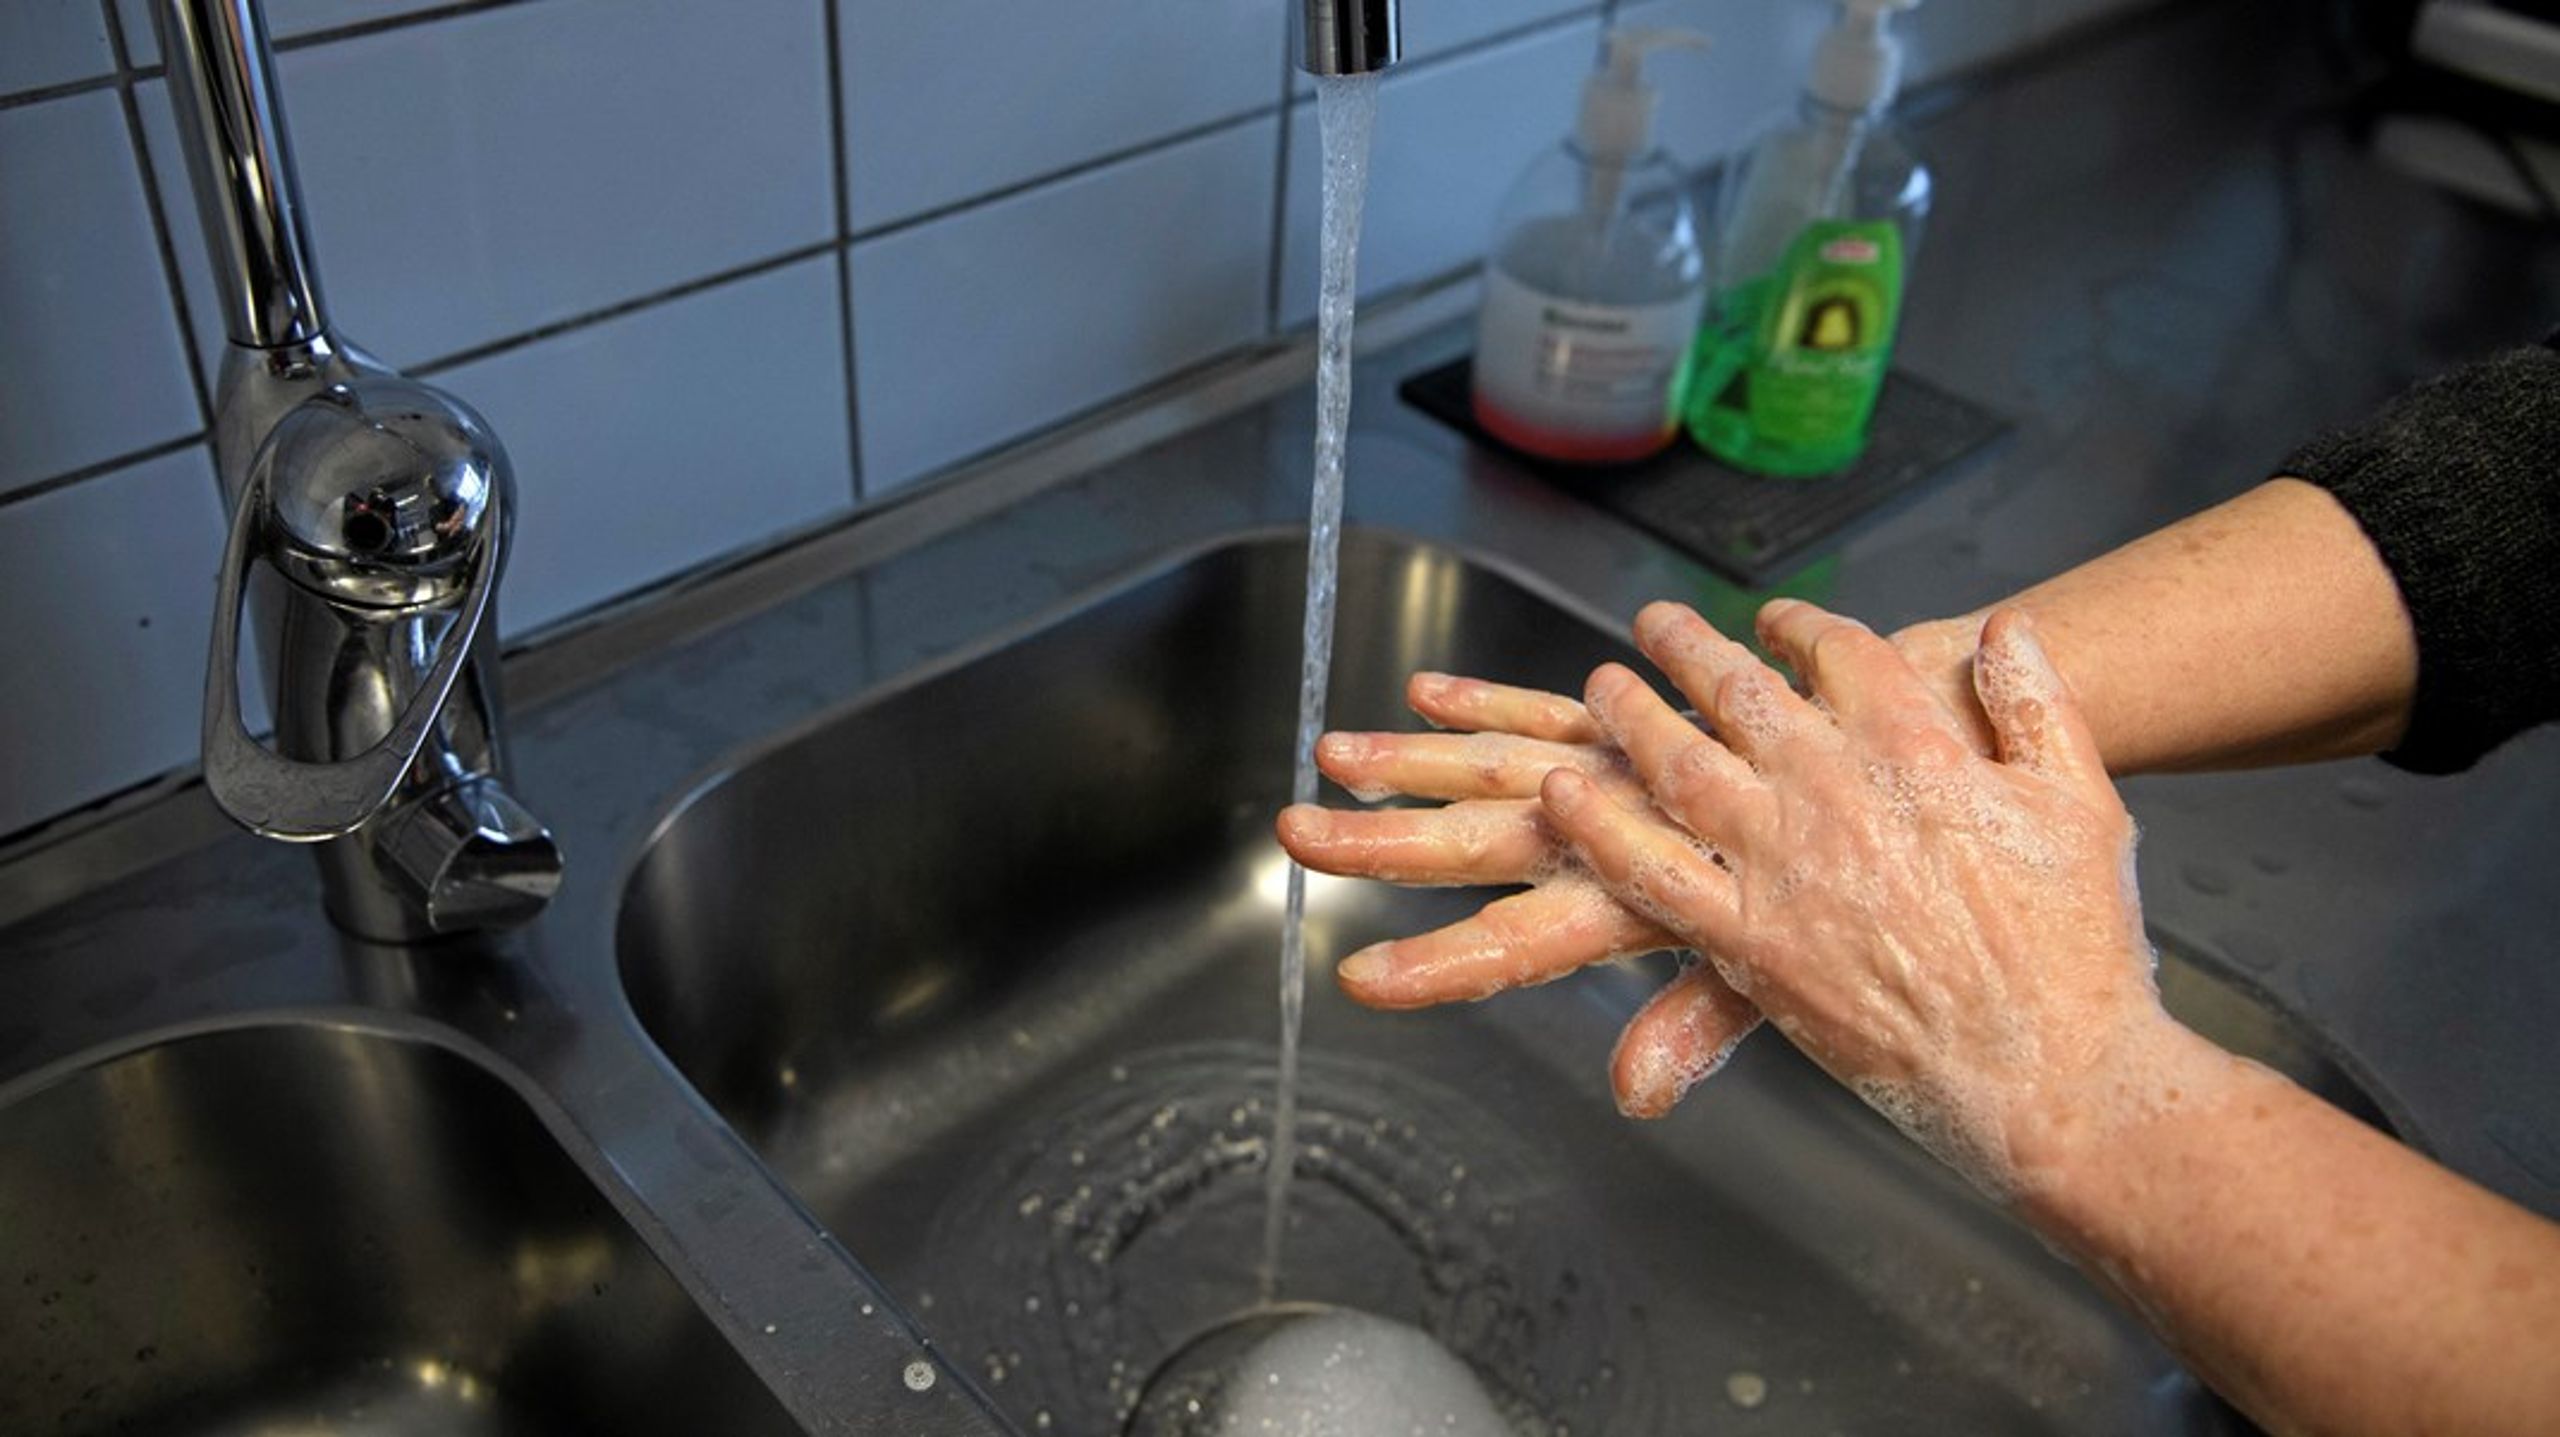 Tvål och vatten är enkla åtgärder som kan förhindra infektioner från att spridas.